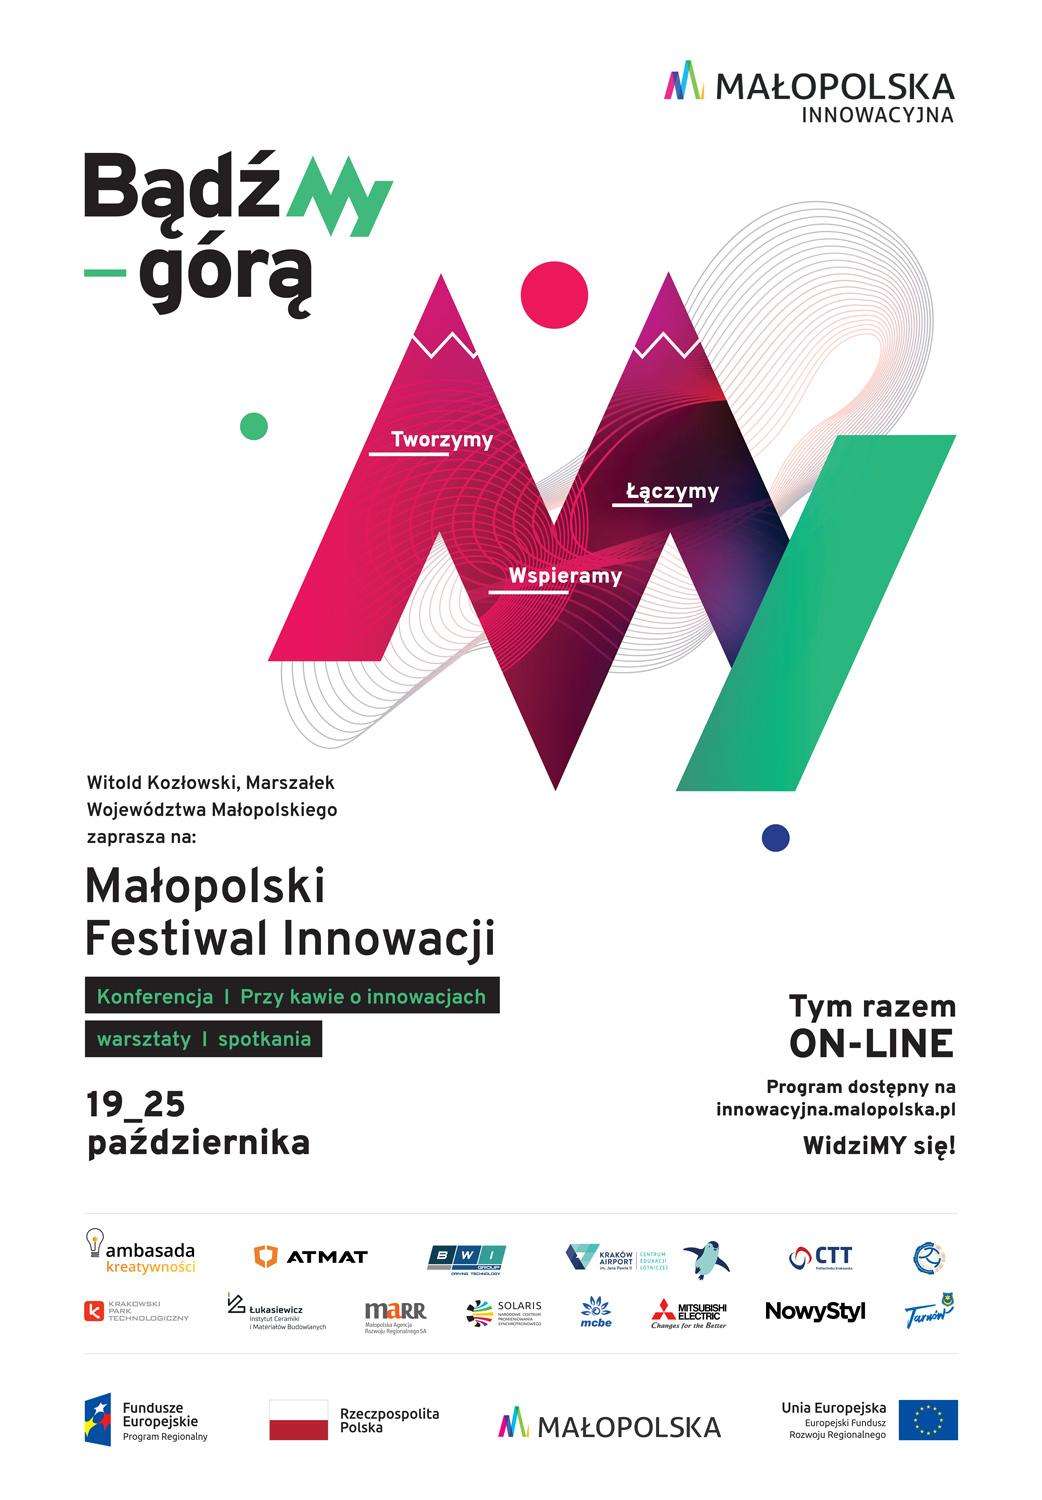 Małopolski Festiwal Innowacji - DziałaMY!